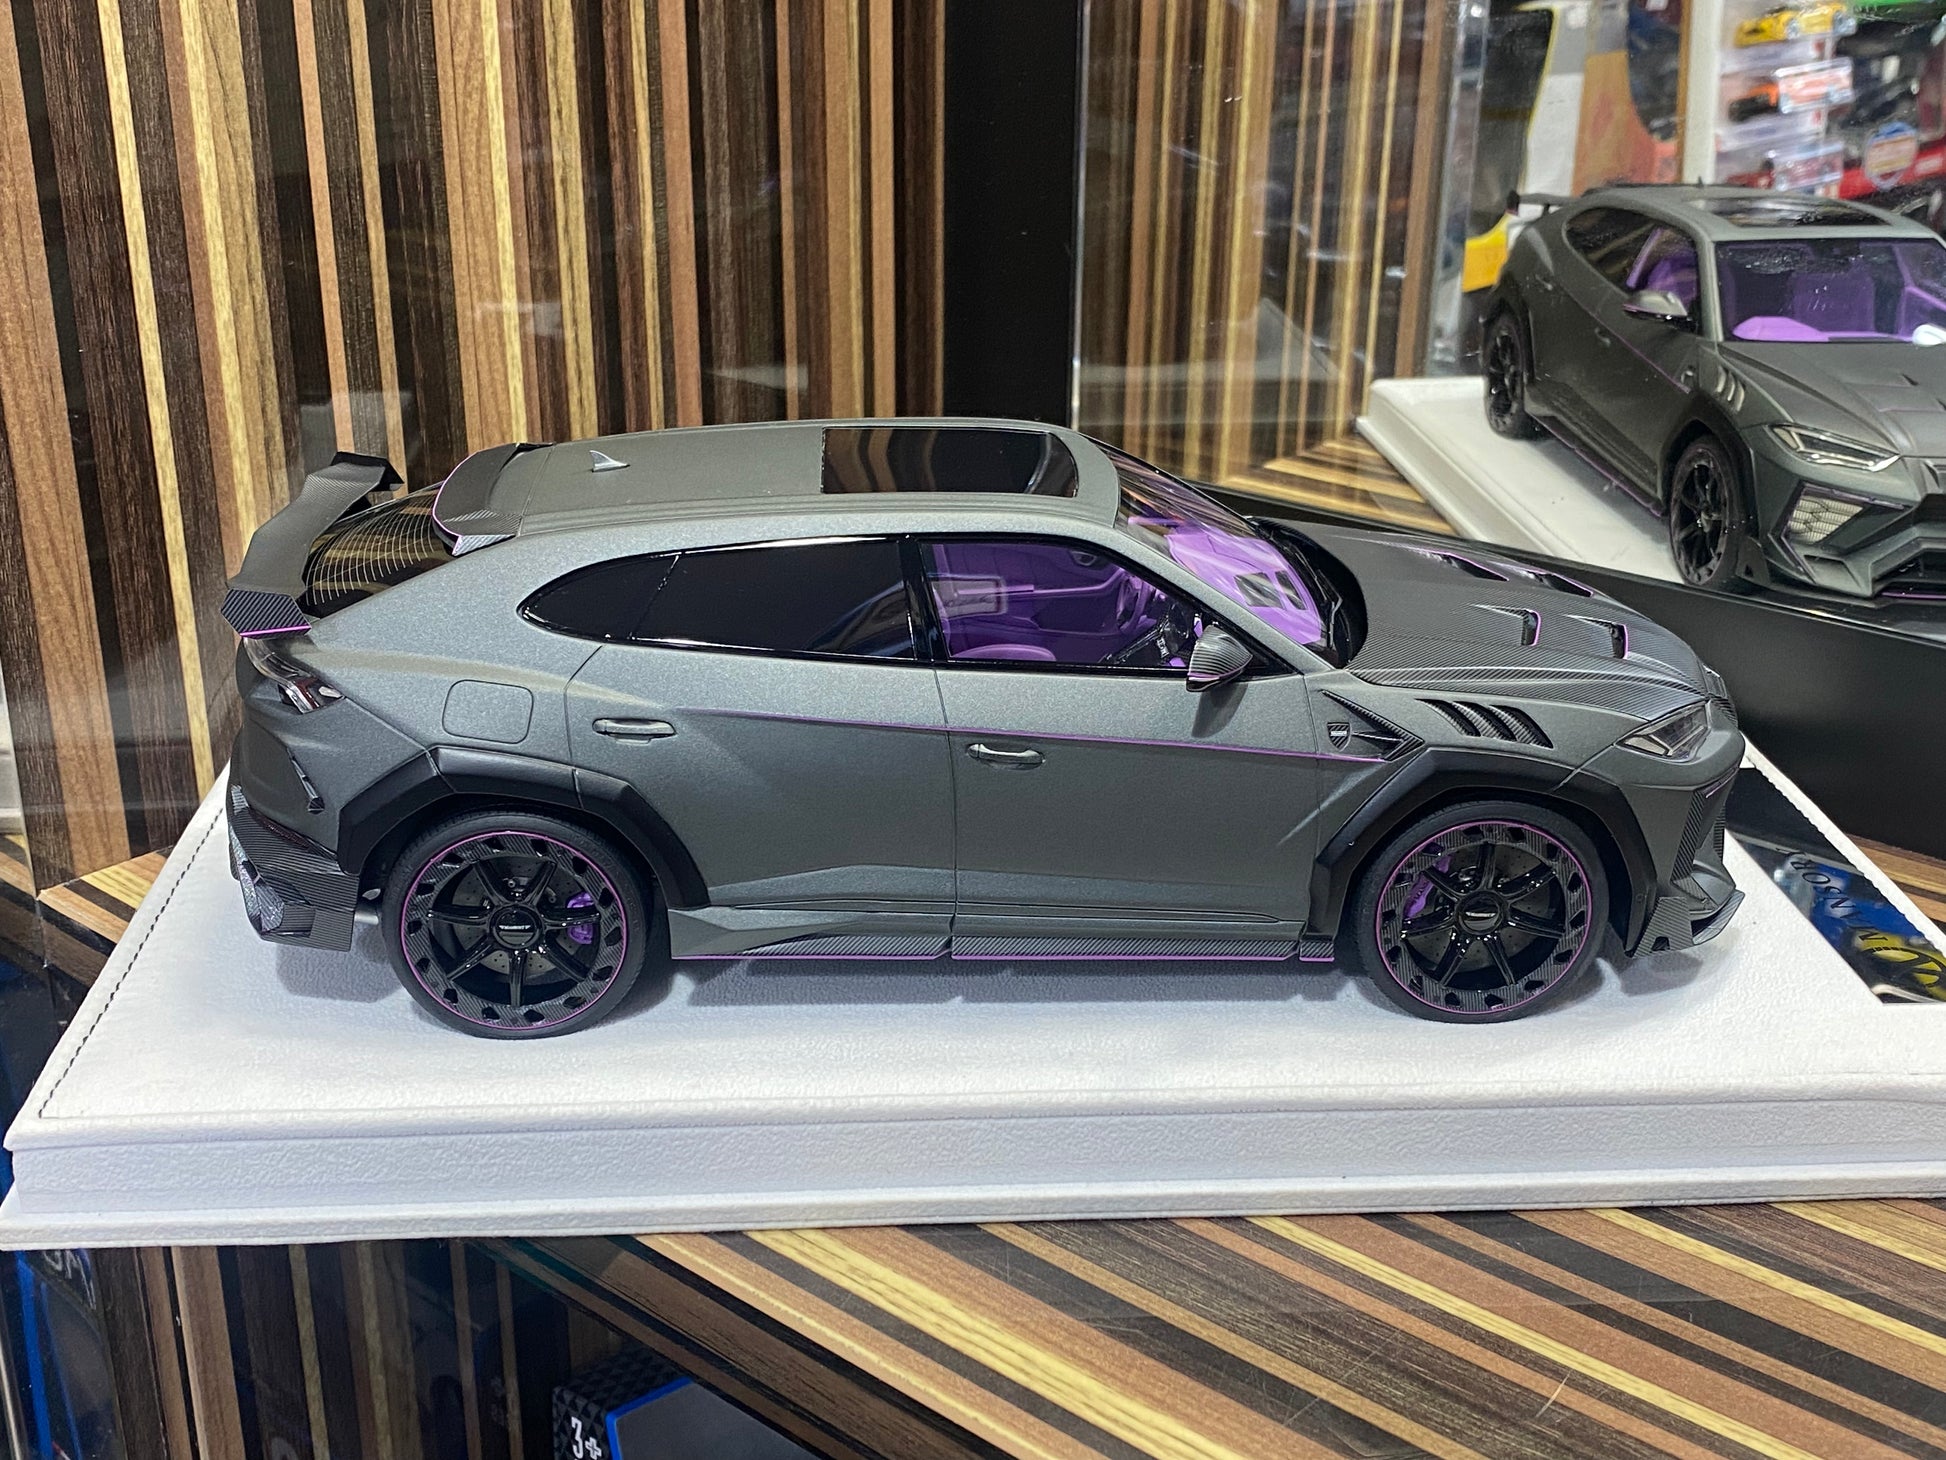 1/18 Diecast Lamborghini Mansory Urus Venatus - Grey Matt Purple Model Car|Sold in Dturman.com Dubai UAE.